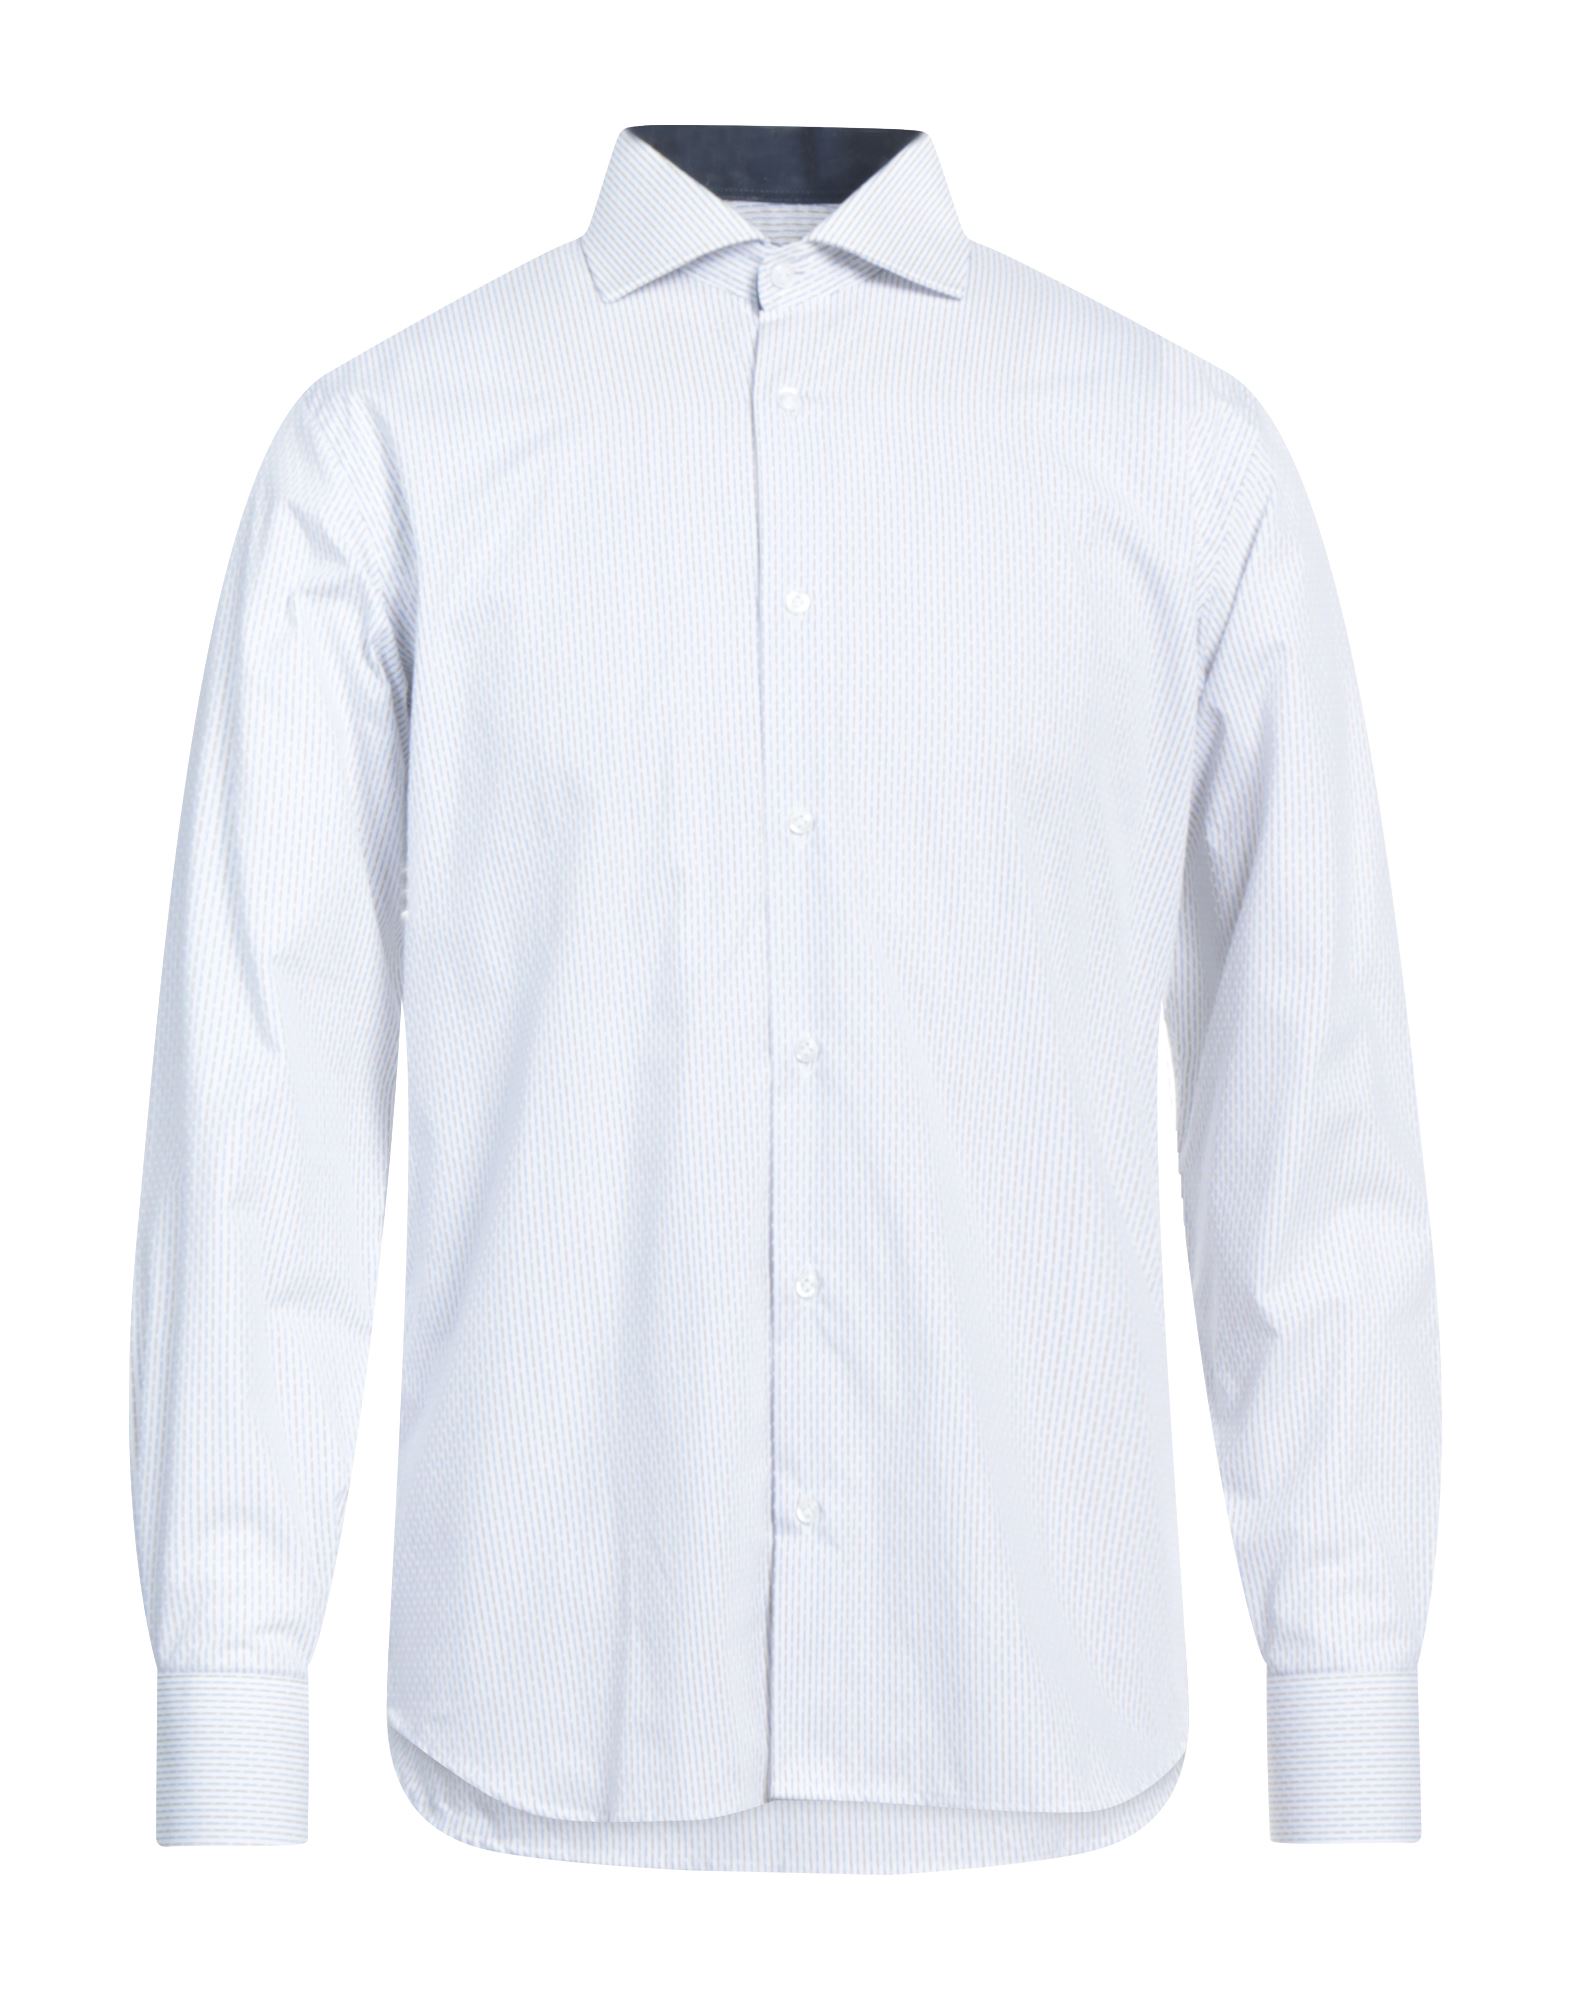 P. Langella Shirts In White